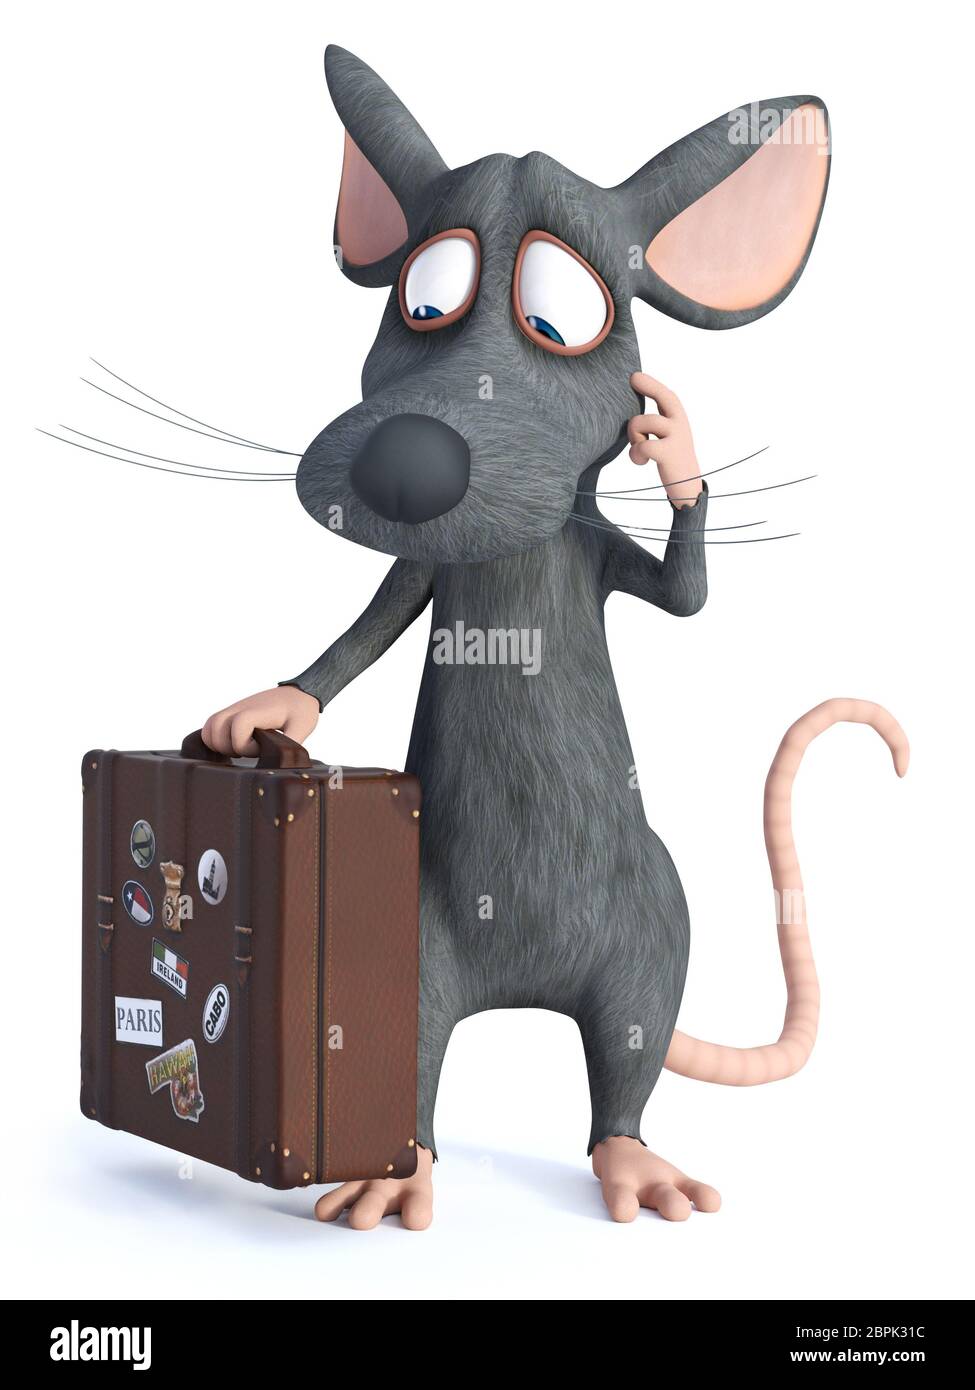 3D-Rendering von einem netten cartoon Maus mit einem Reisekoffer und wie er denkt über etwas. Er scheint bereit zu reisen. Weiß backgr Stockfoto